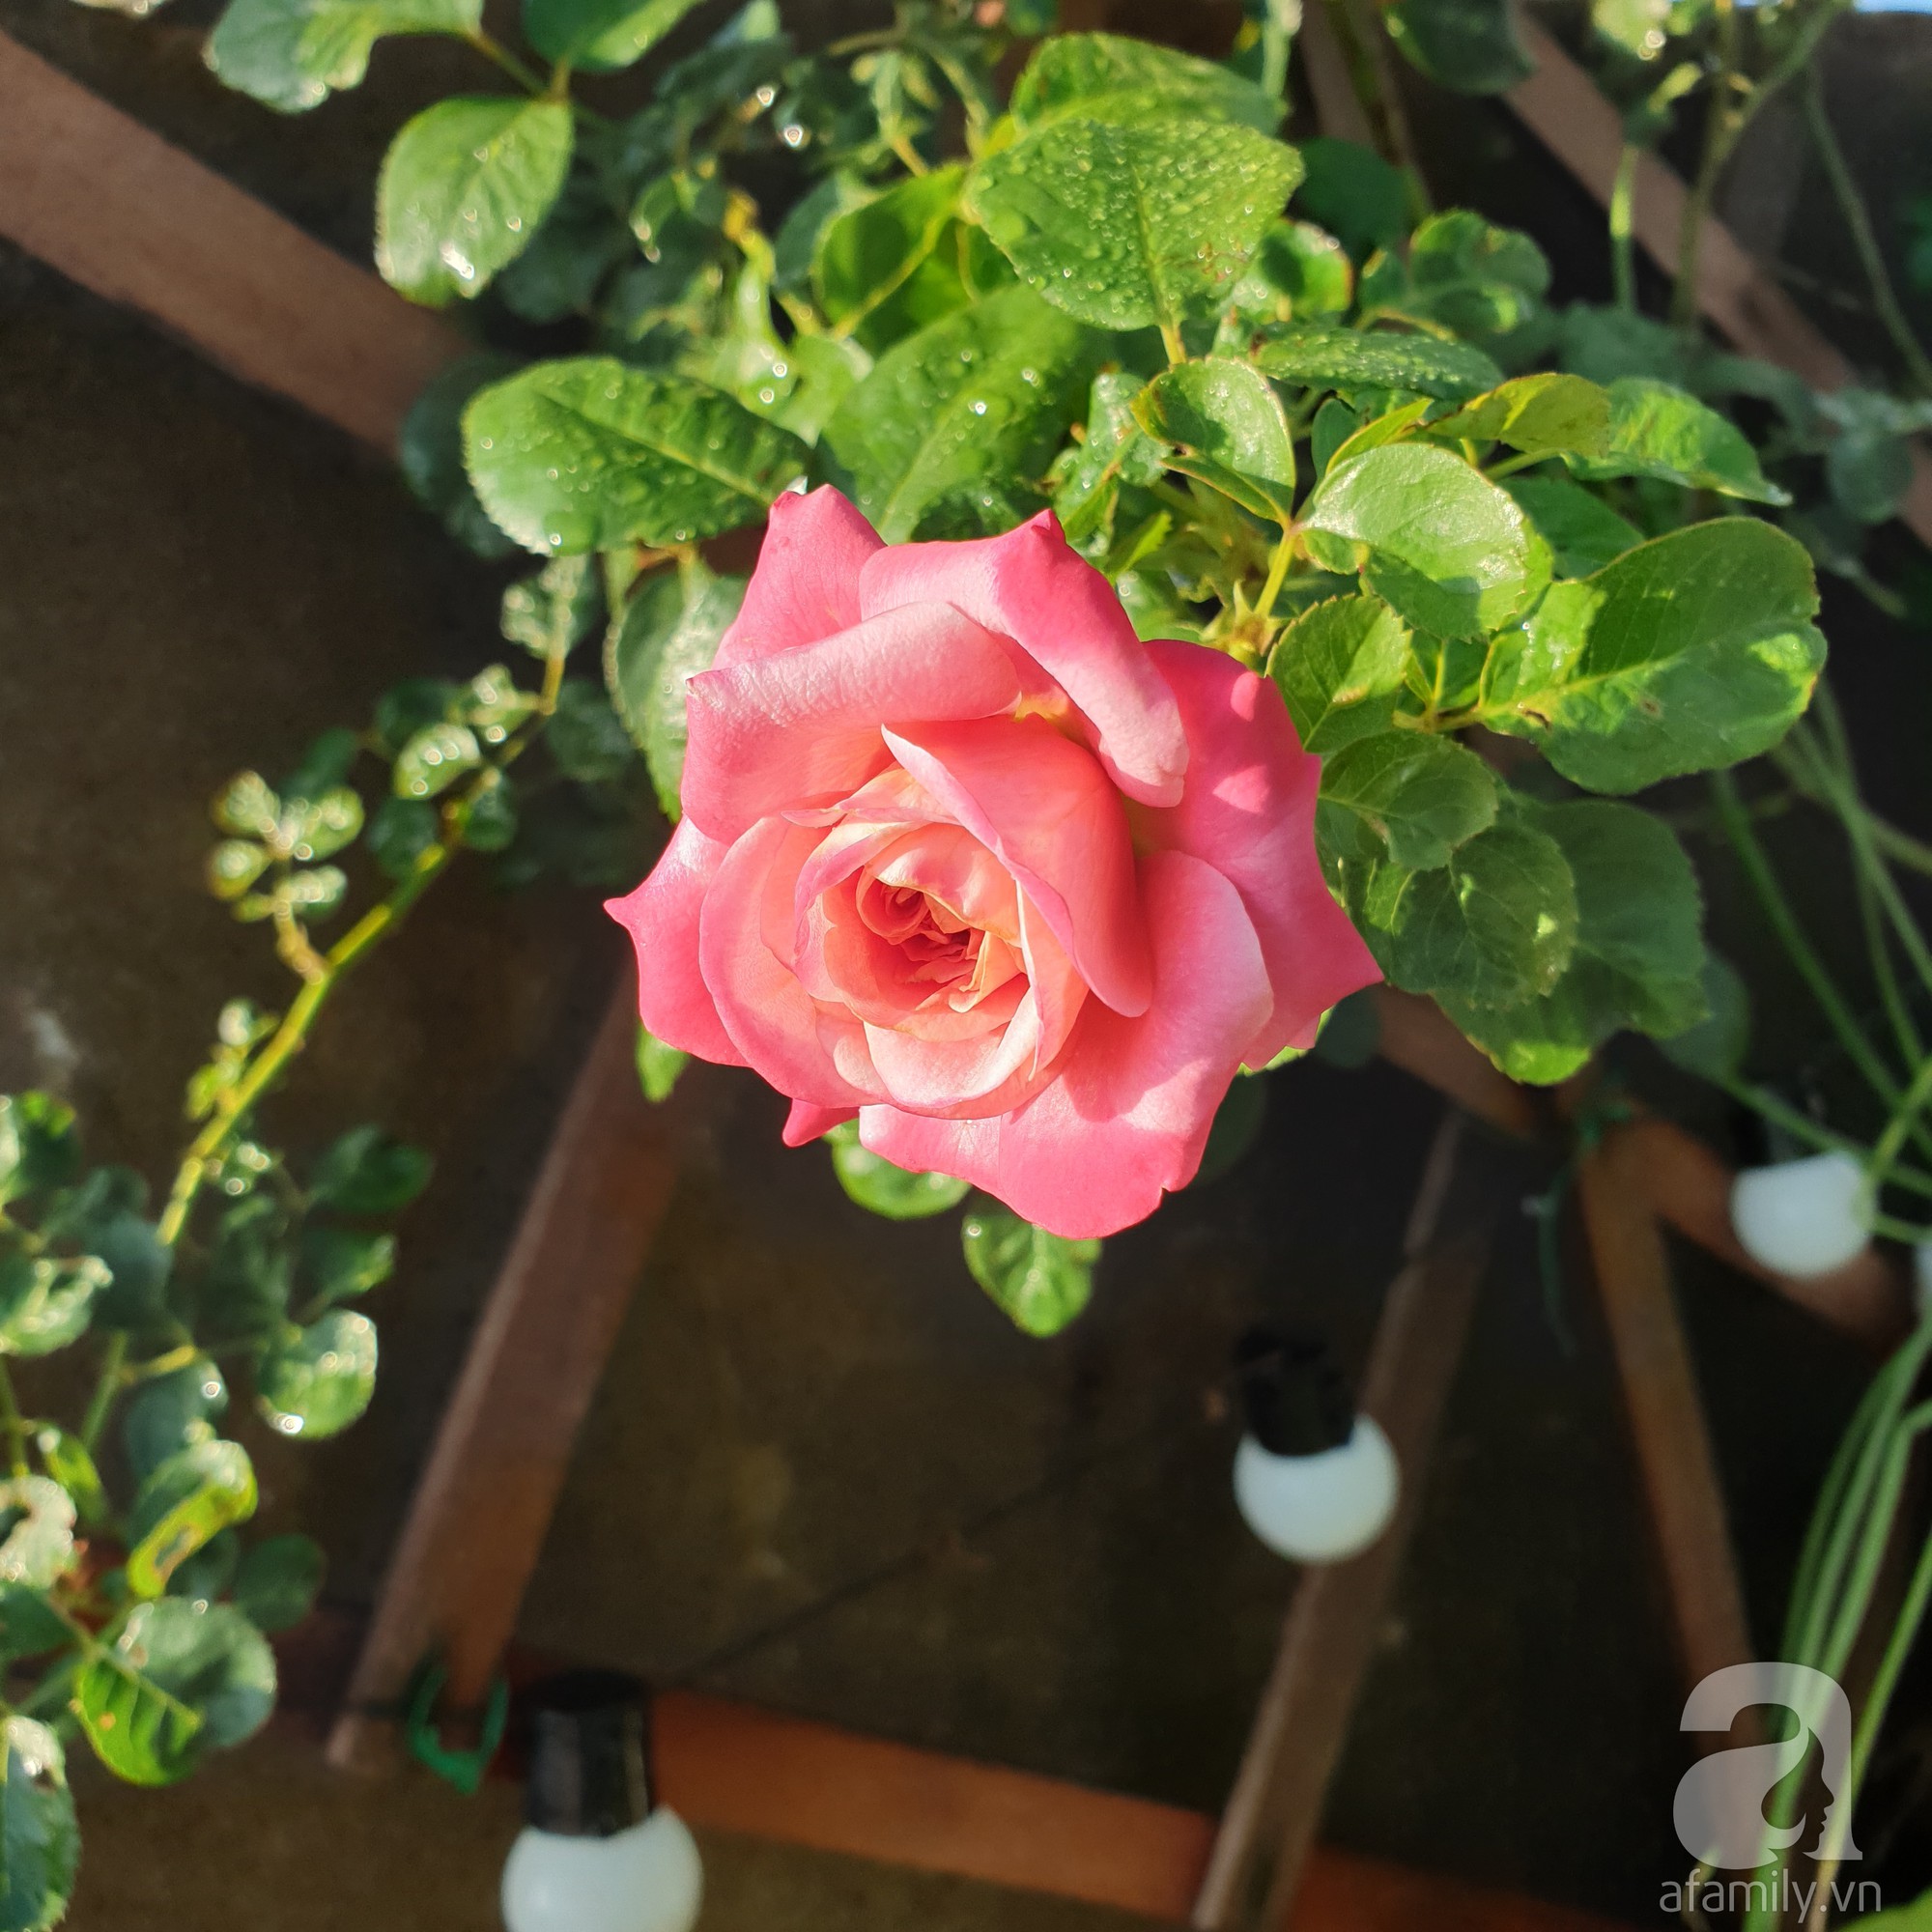 Vườn hồng trên sân thượng rực rỡ sắc màu của chàng trai 8x siêu đảm ở Sài Gòn - Ảnh 20.